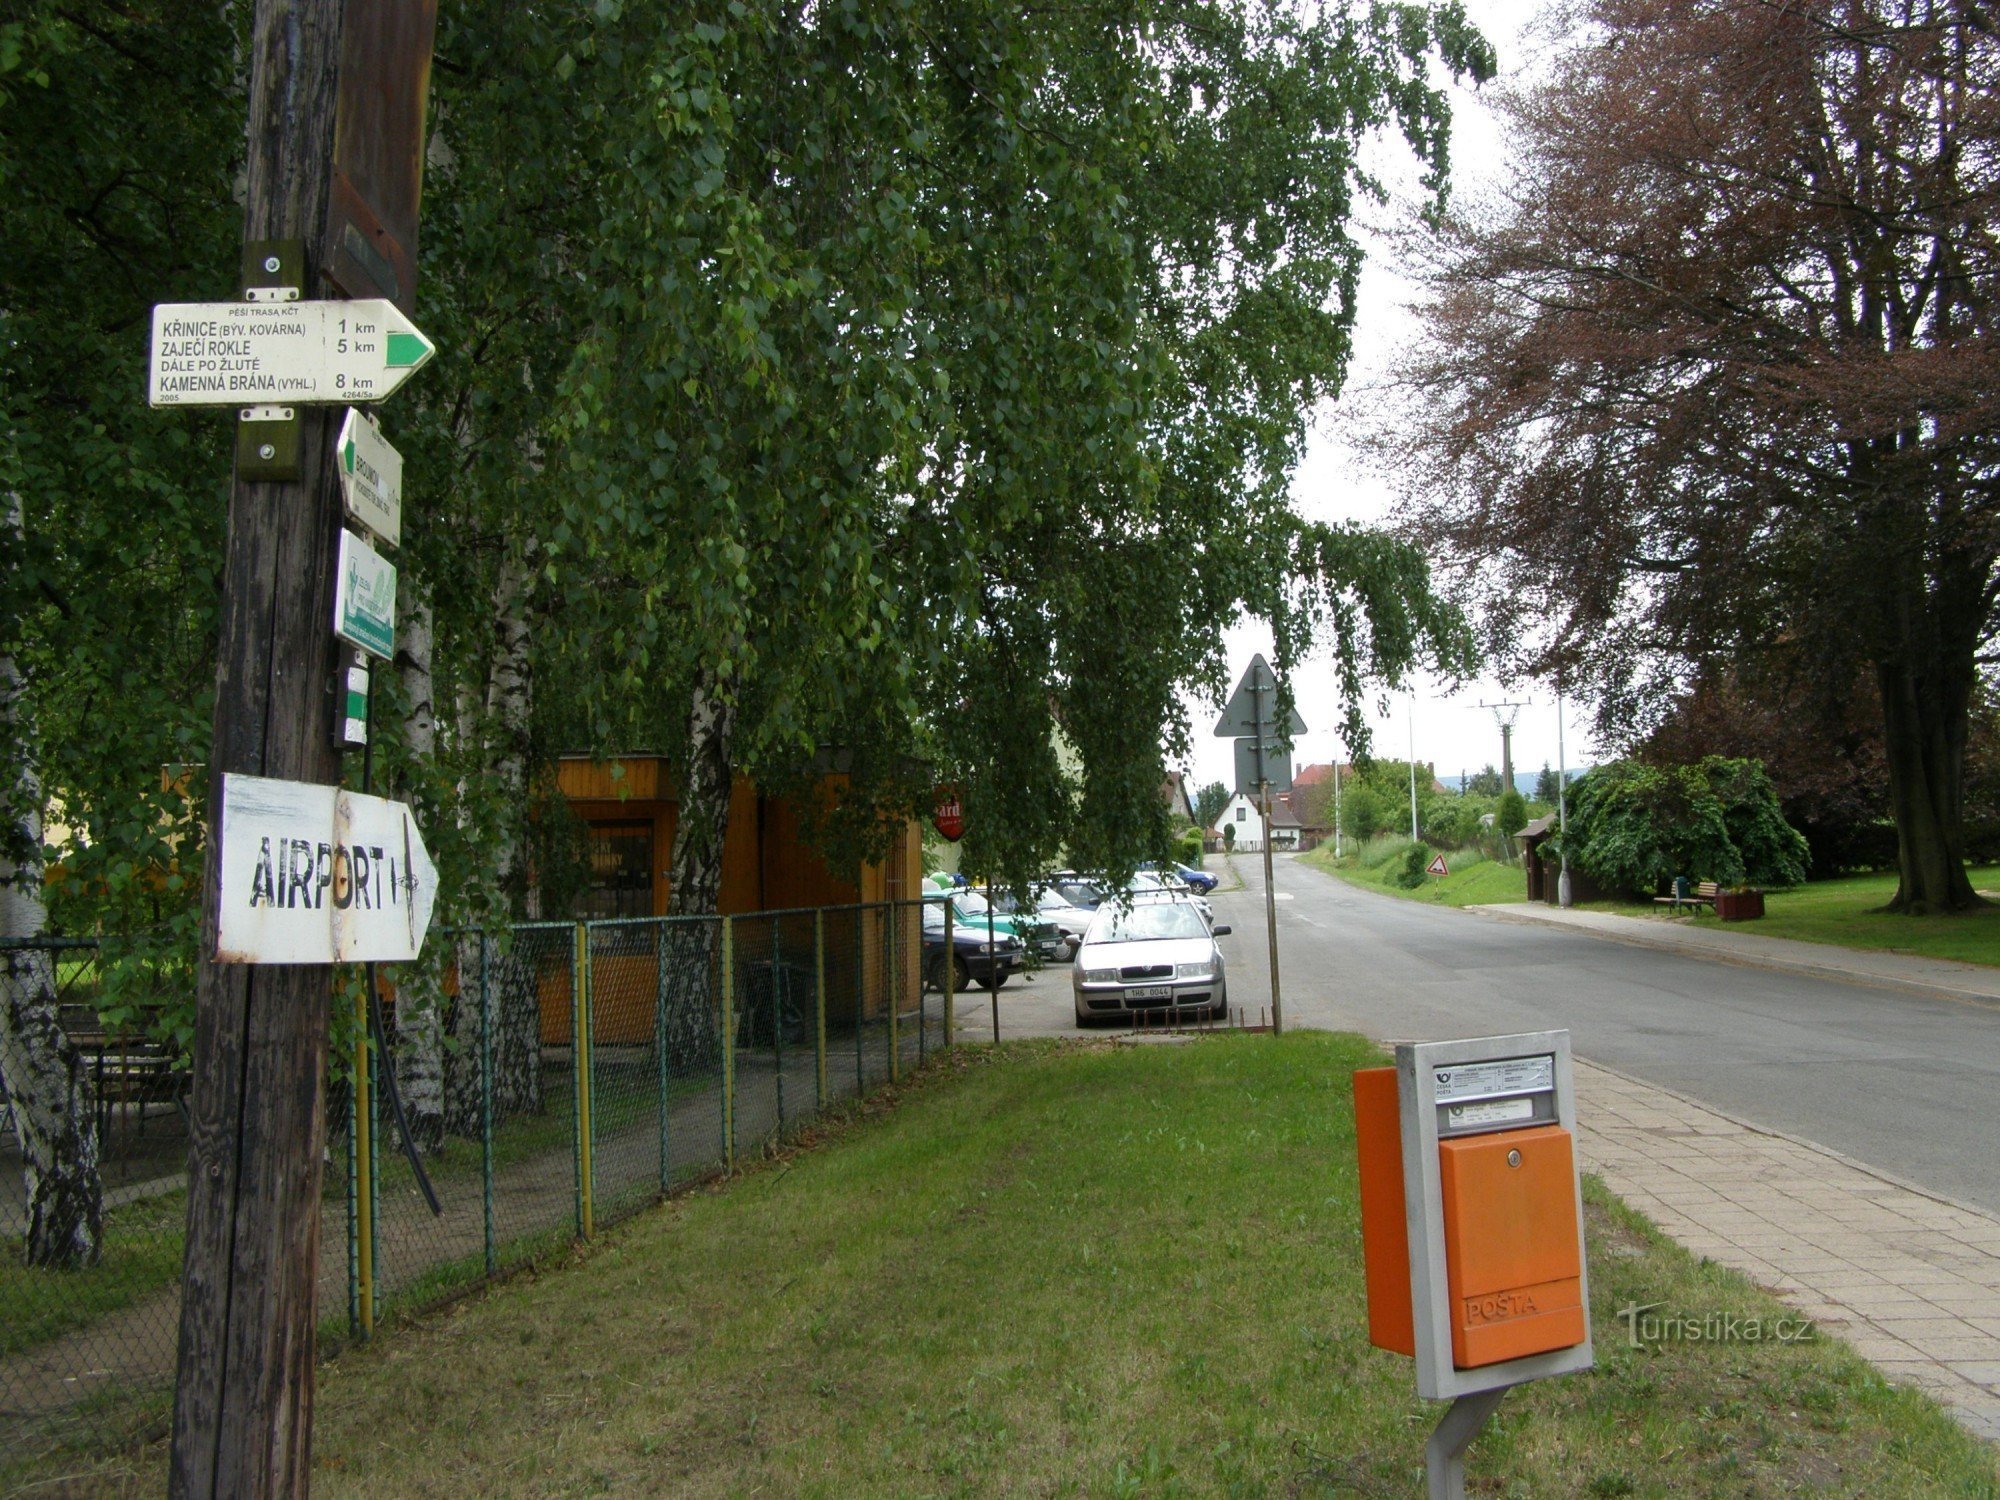 turistično križišče Broumov - pri leseni cerkvi (pri bolnici)